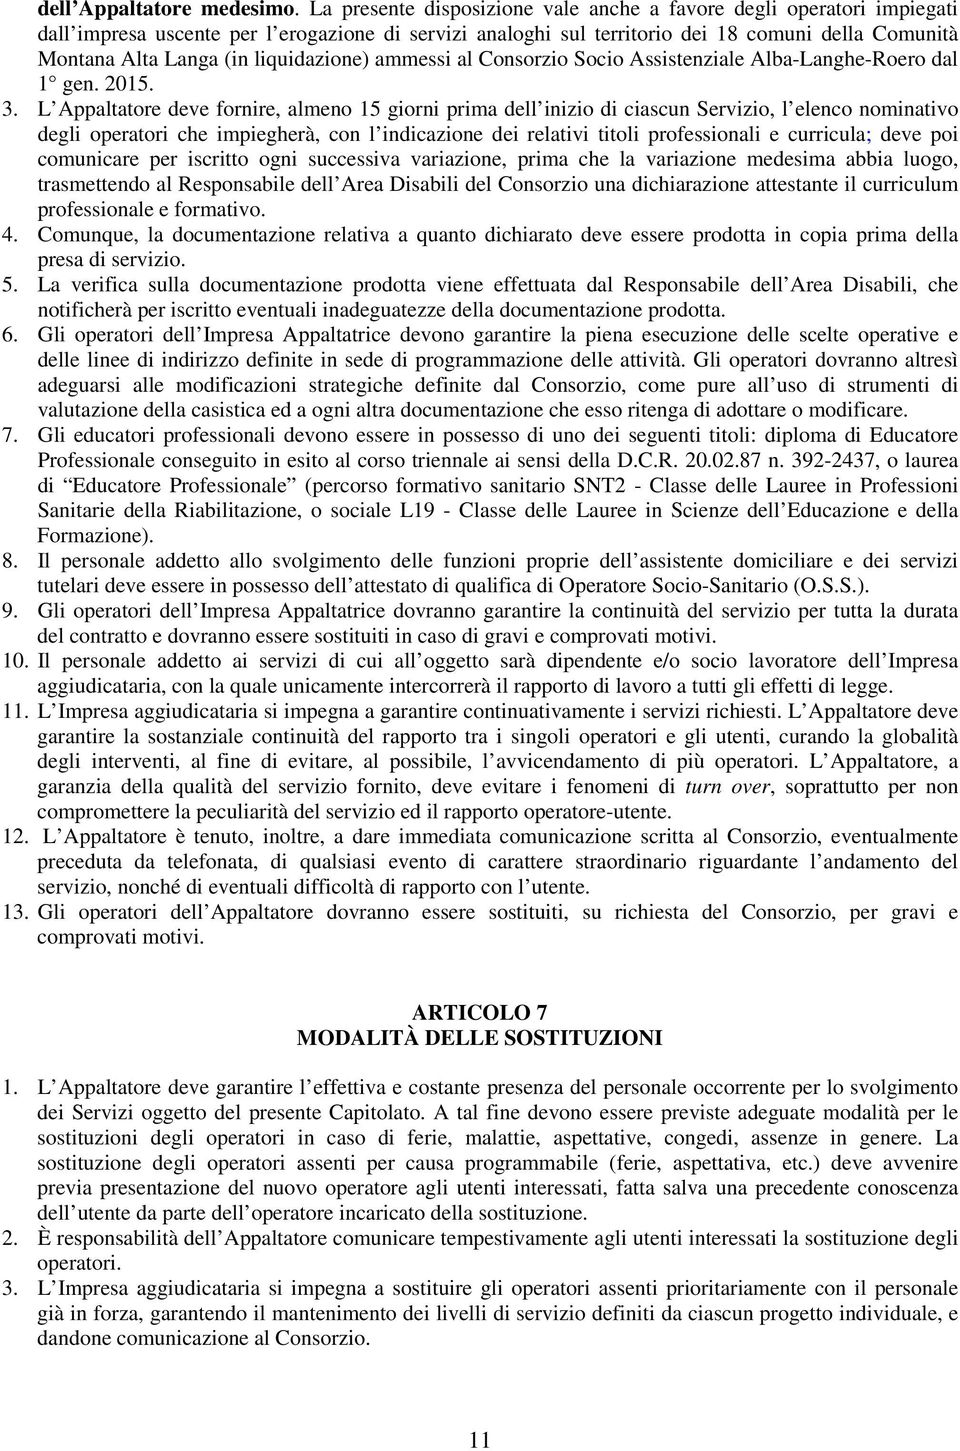 liquidazione) ammessi al Consorzio Socio Assistenziale Alba-Langhe-Roero dal 1 gen. 2015. 3.